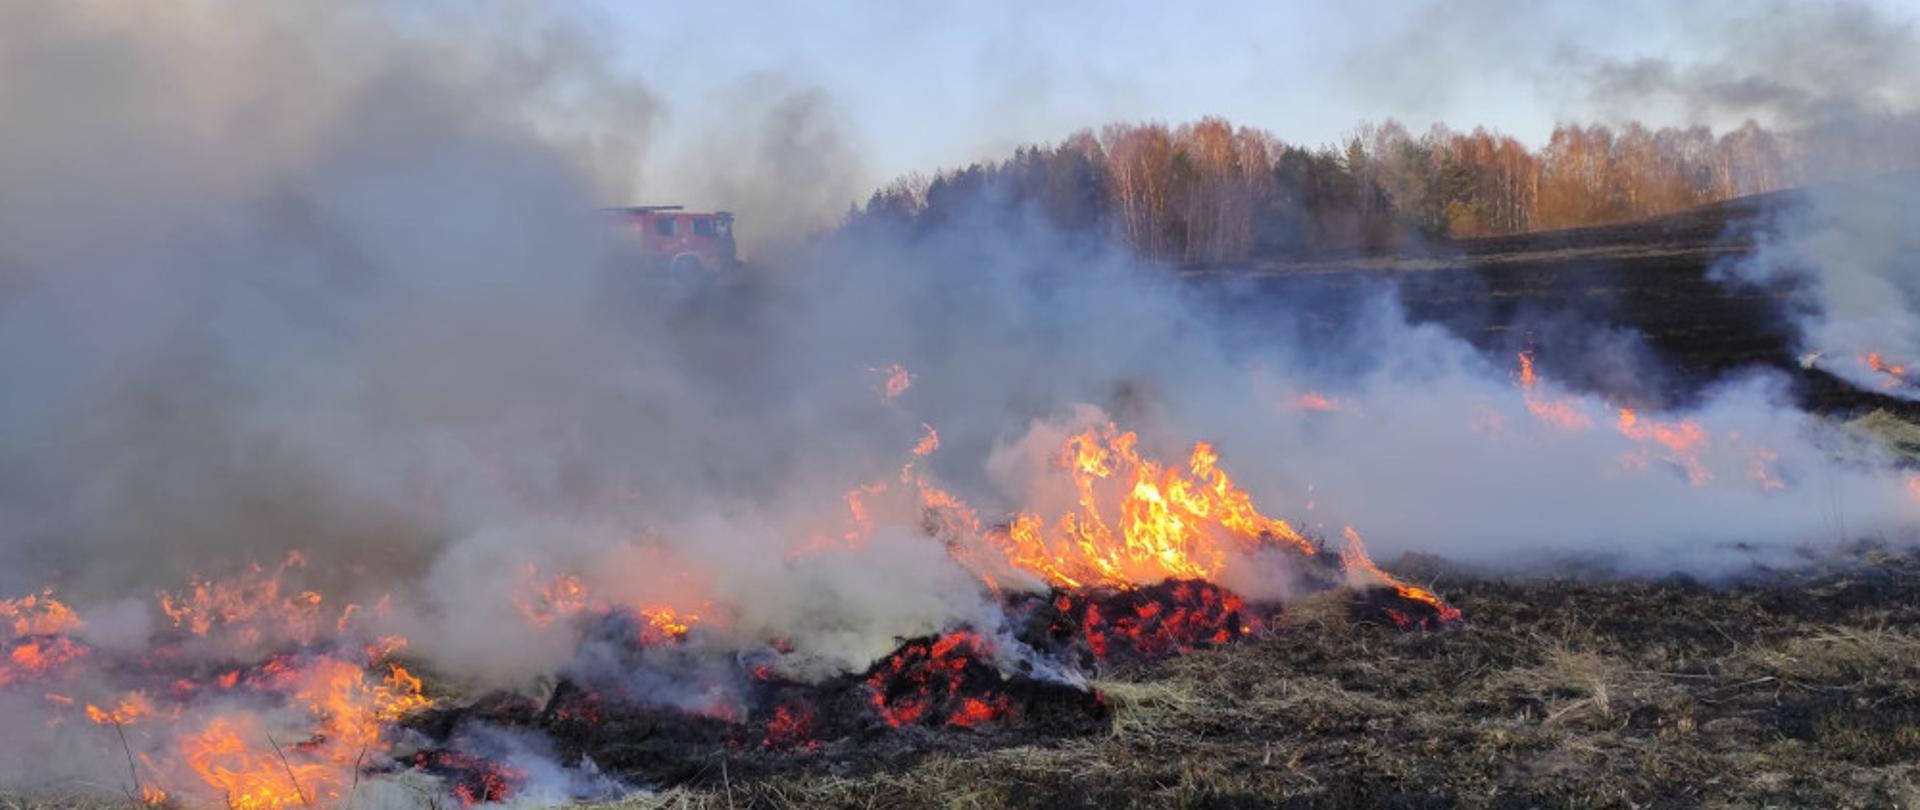 Pożar trawy w miejscowości Łubowo - akcja gaśnicza wdać płomienie i dym 